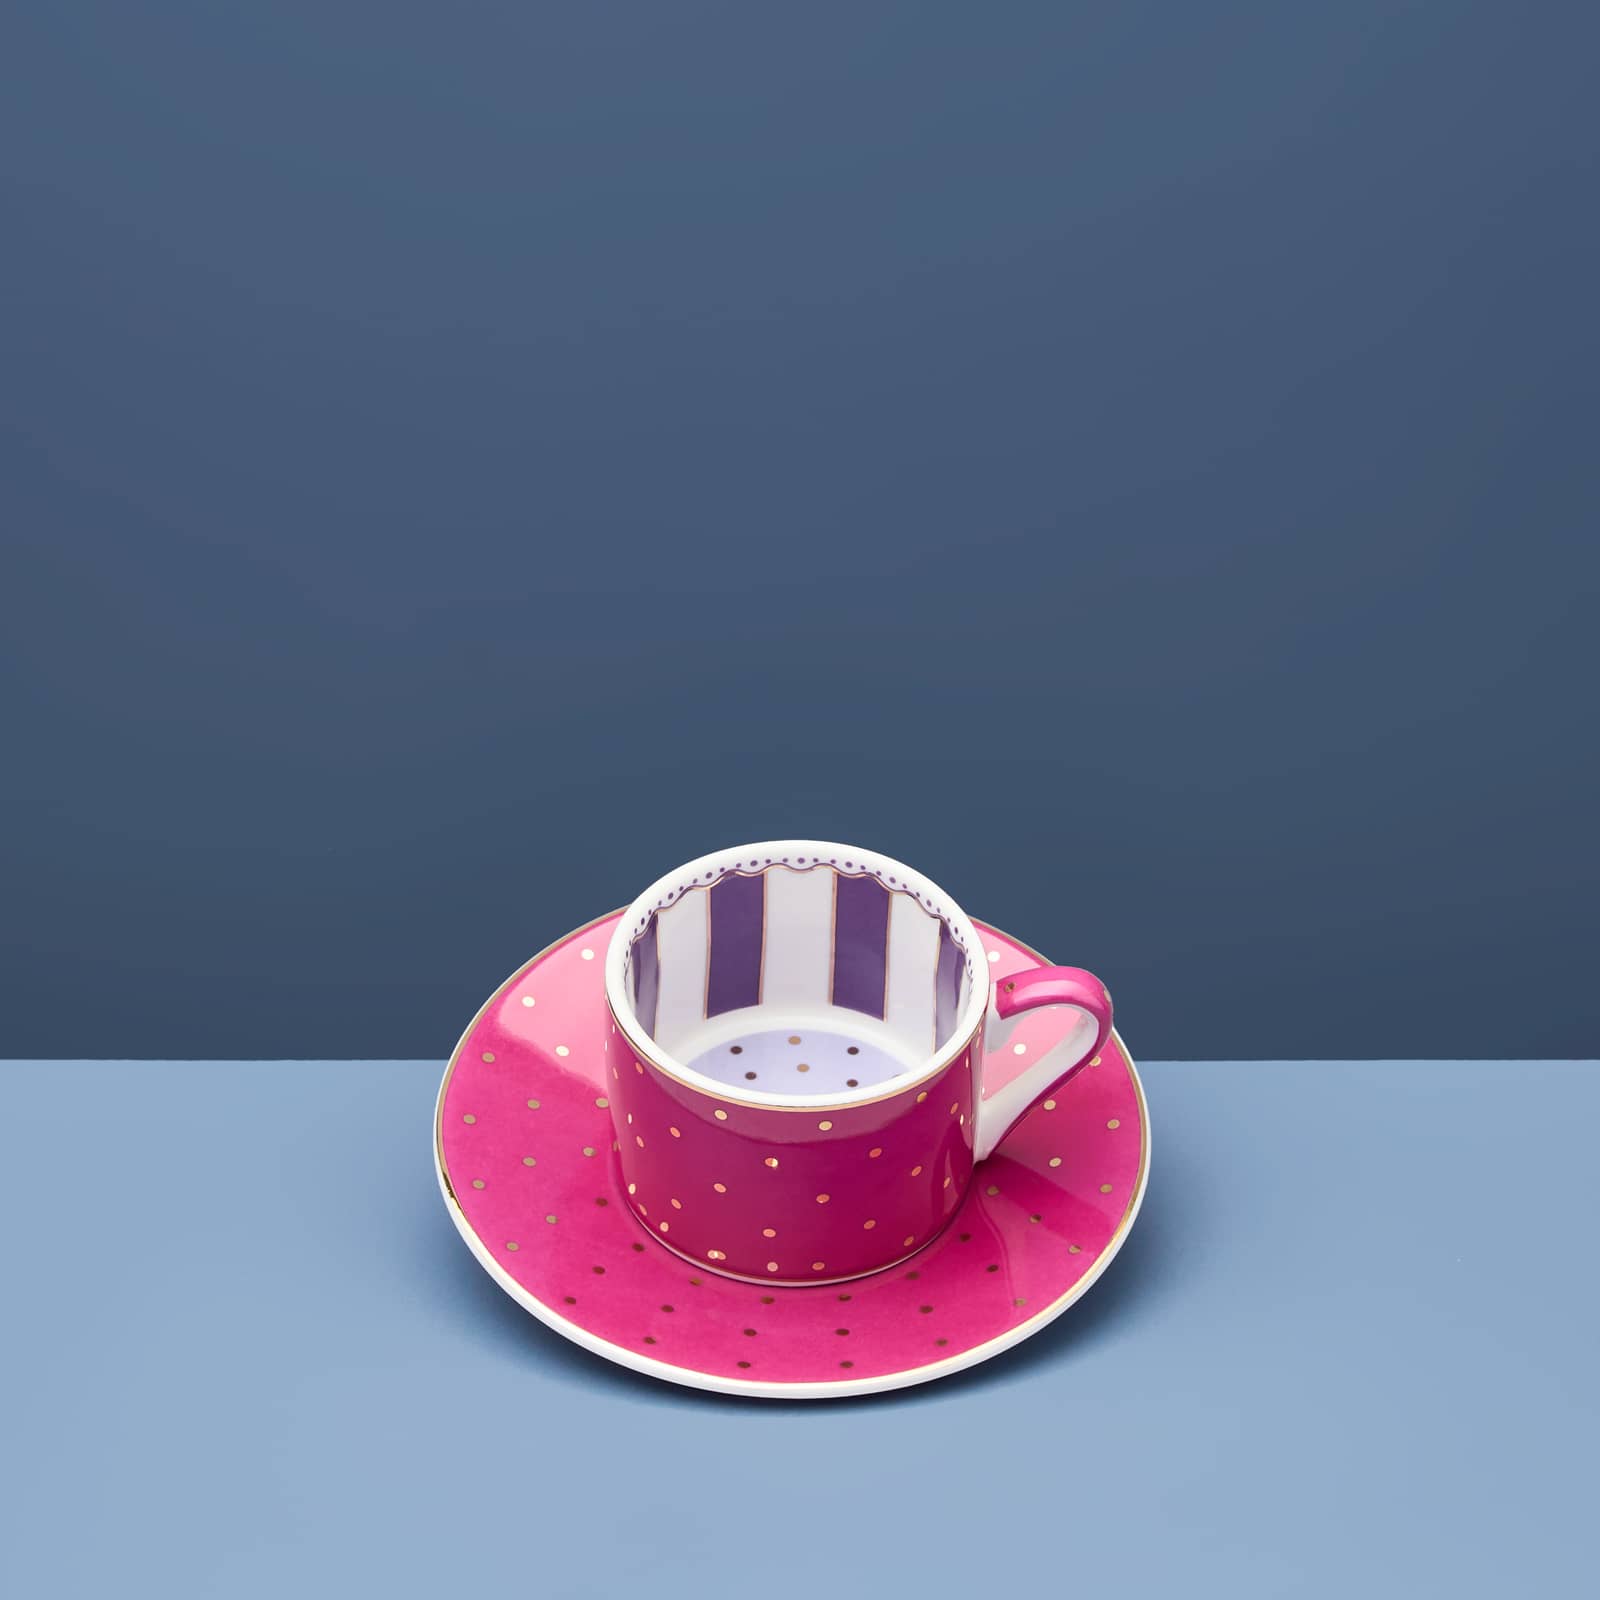 Set of 4 Fancy Colors espresso cups, porcelain, 11.5x6 cm, not